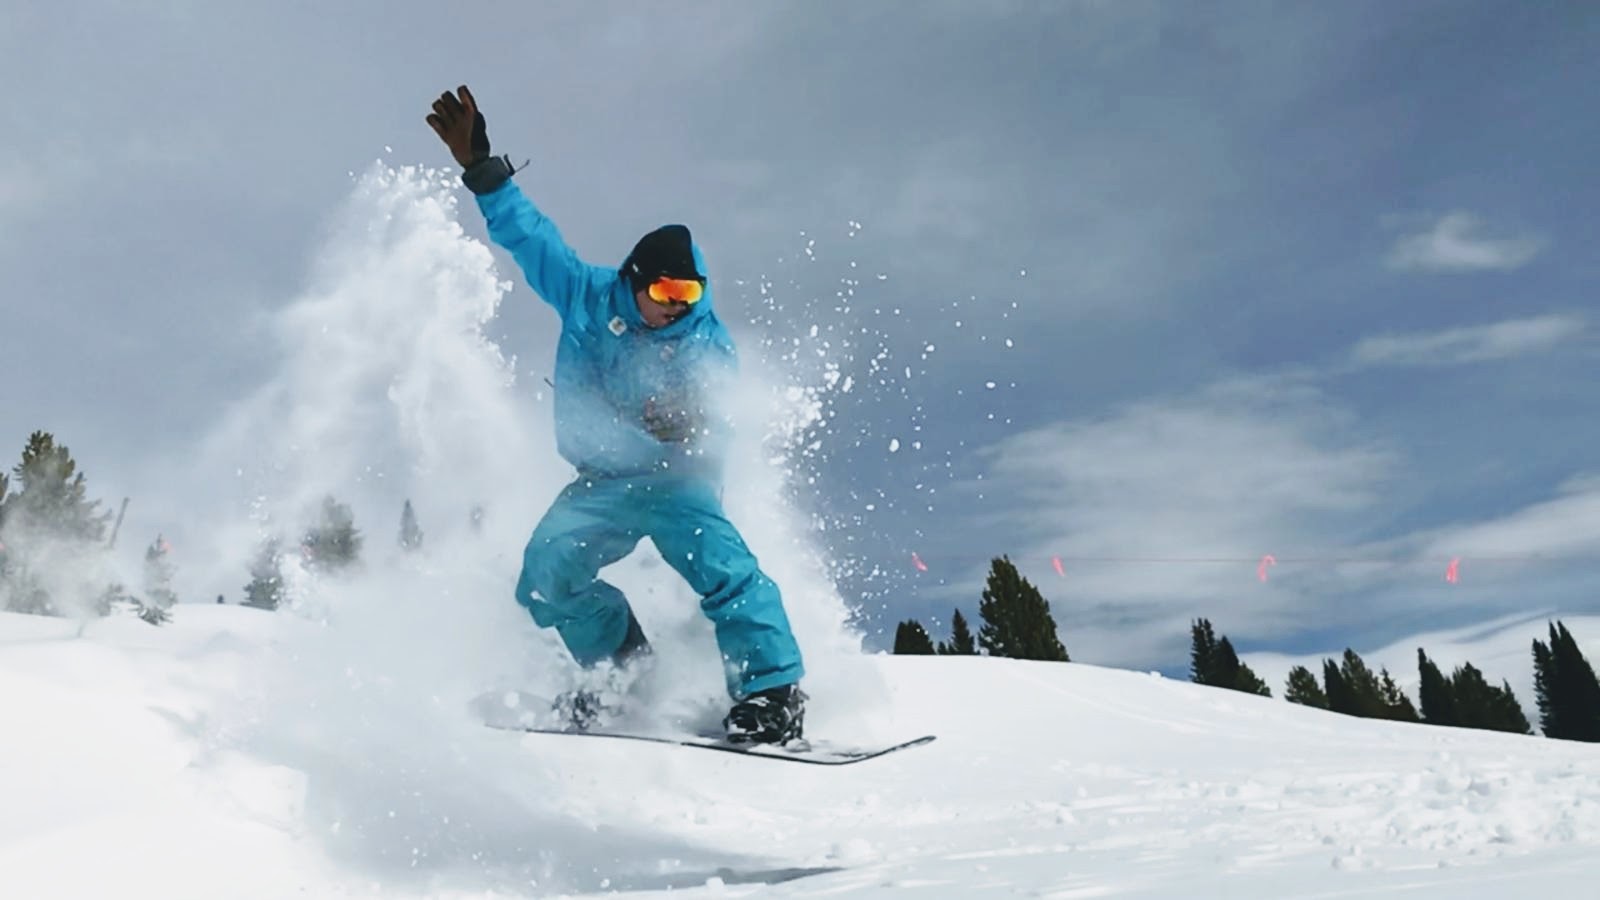 Prahlad Delaney snowboarding in Vail Colorado